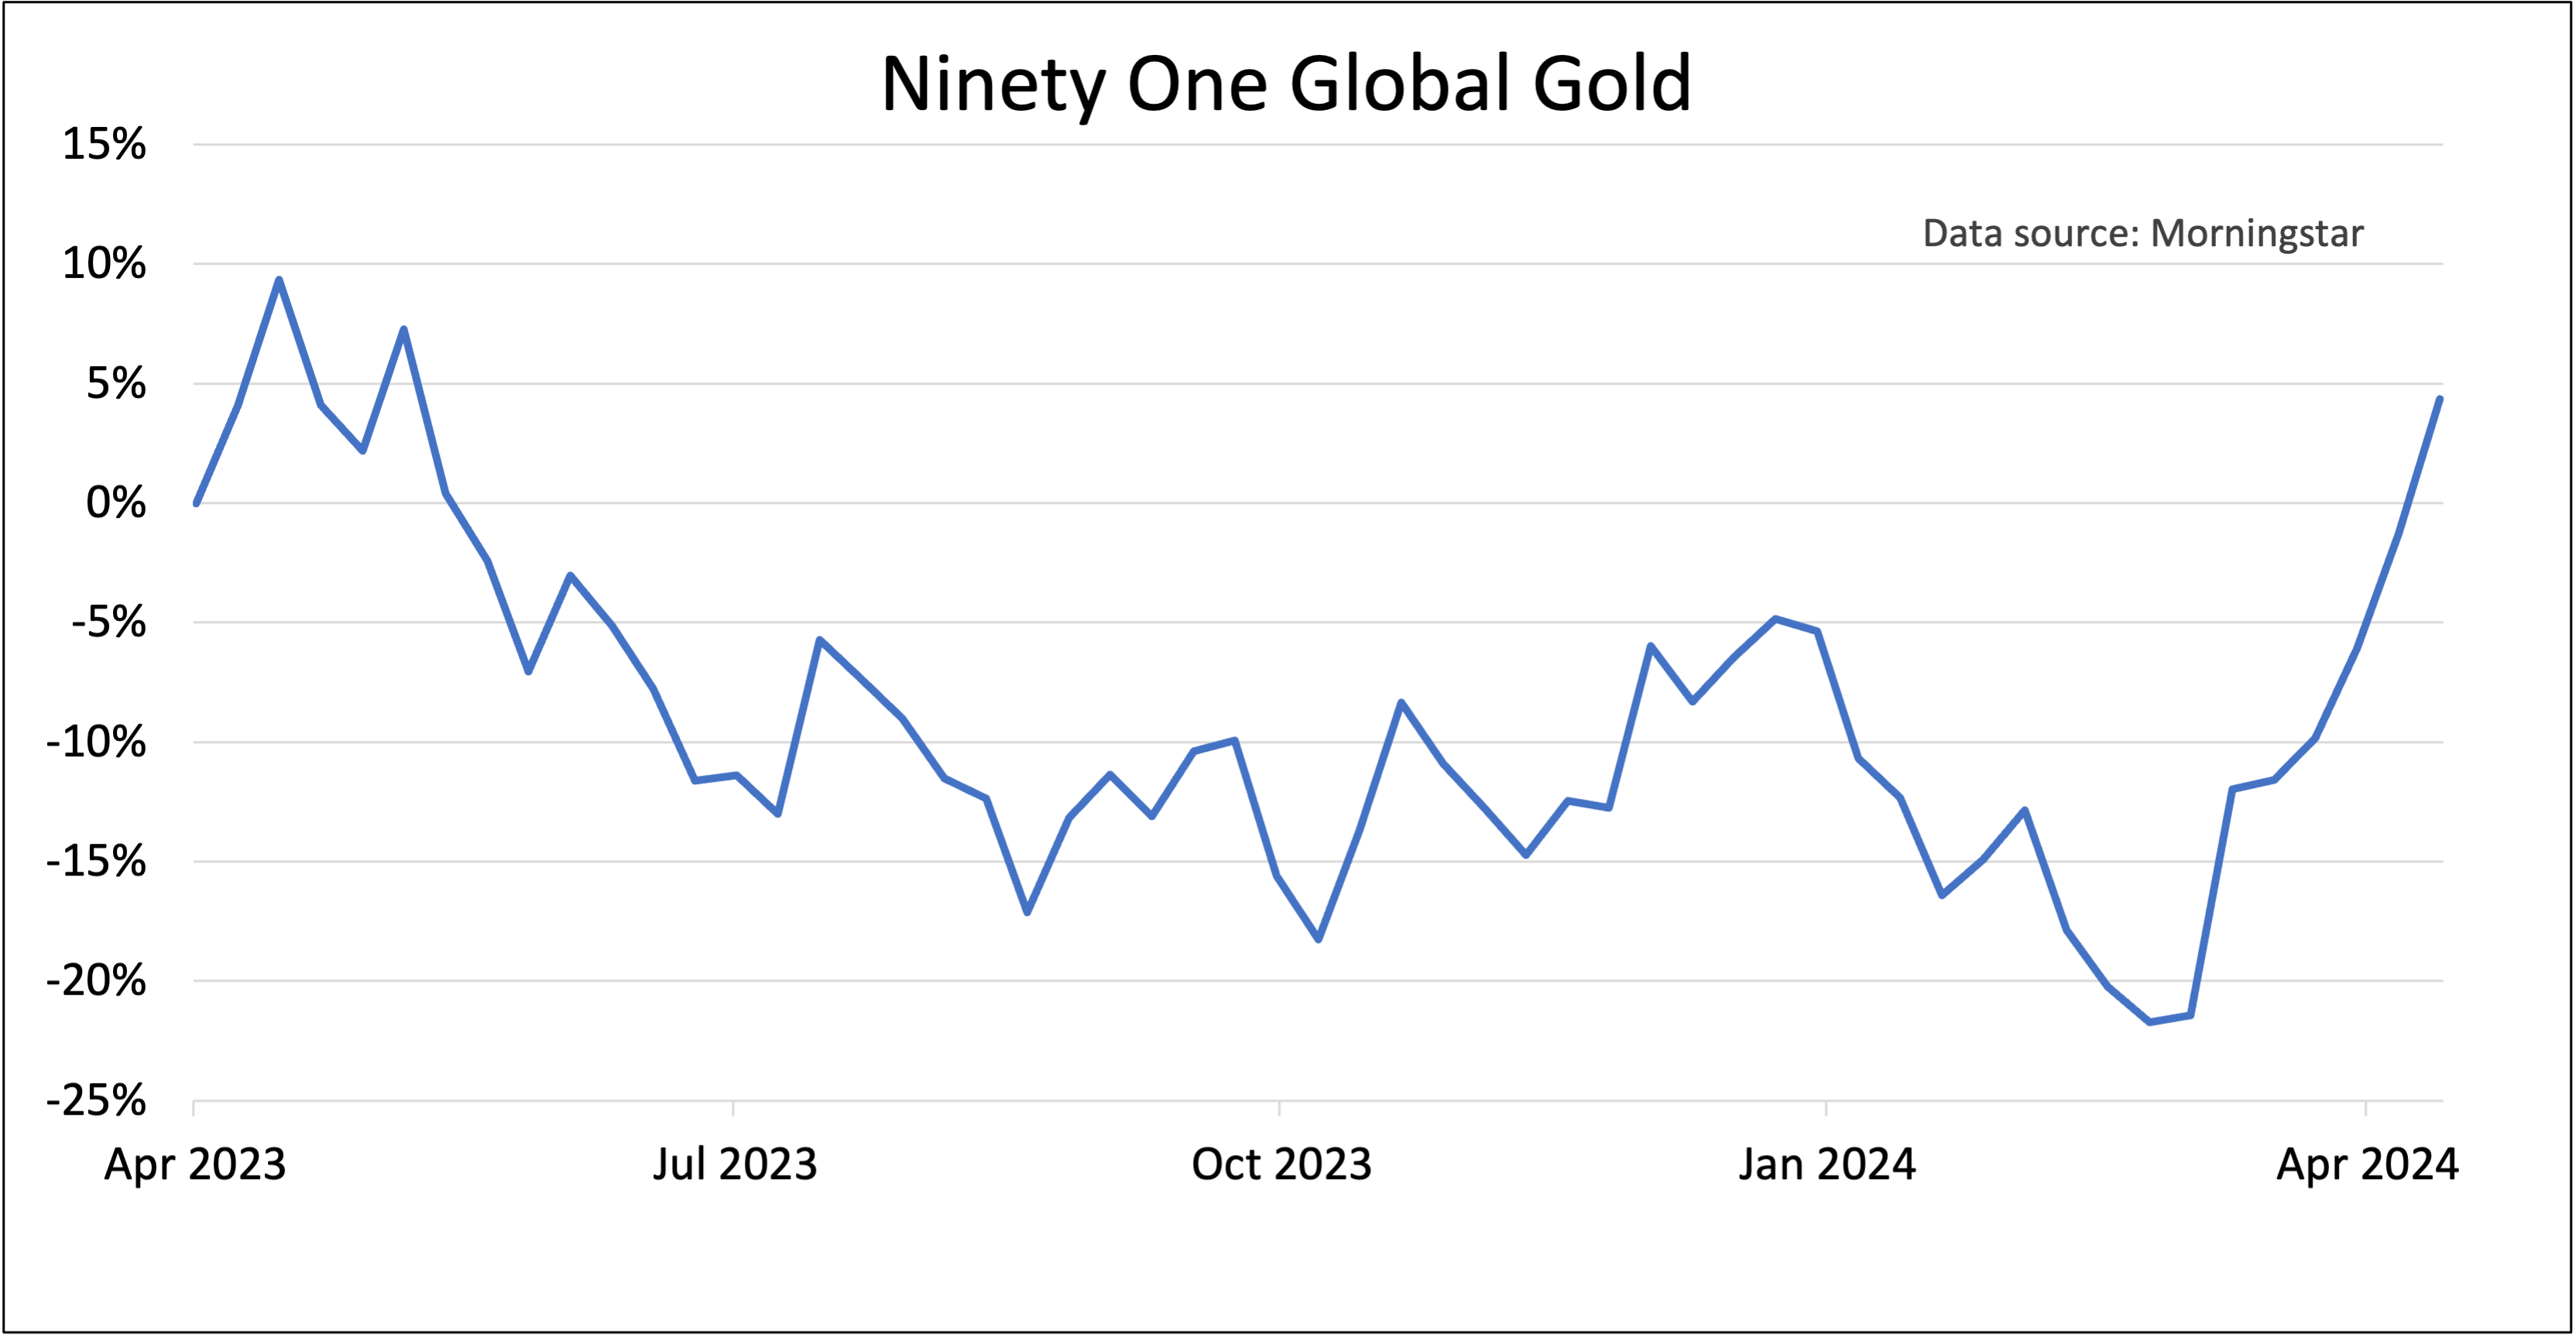 Ninety One Global Gold chart